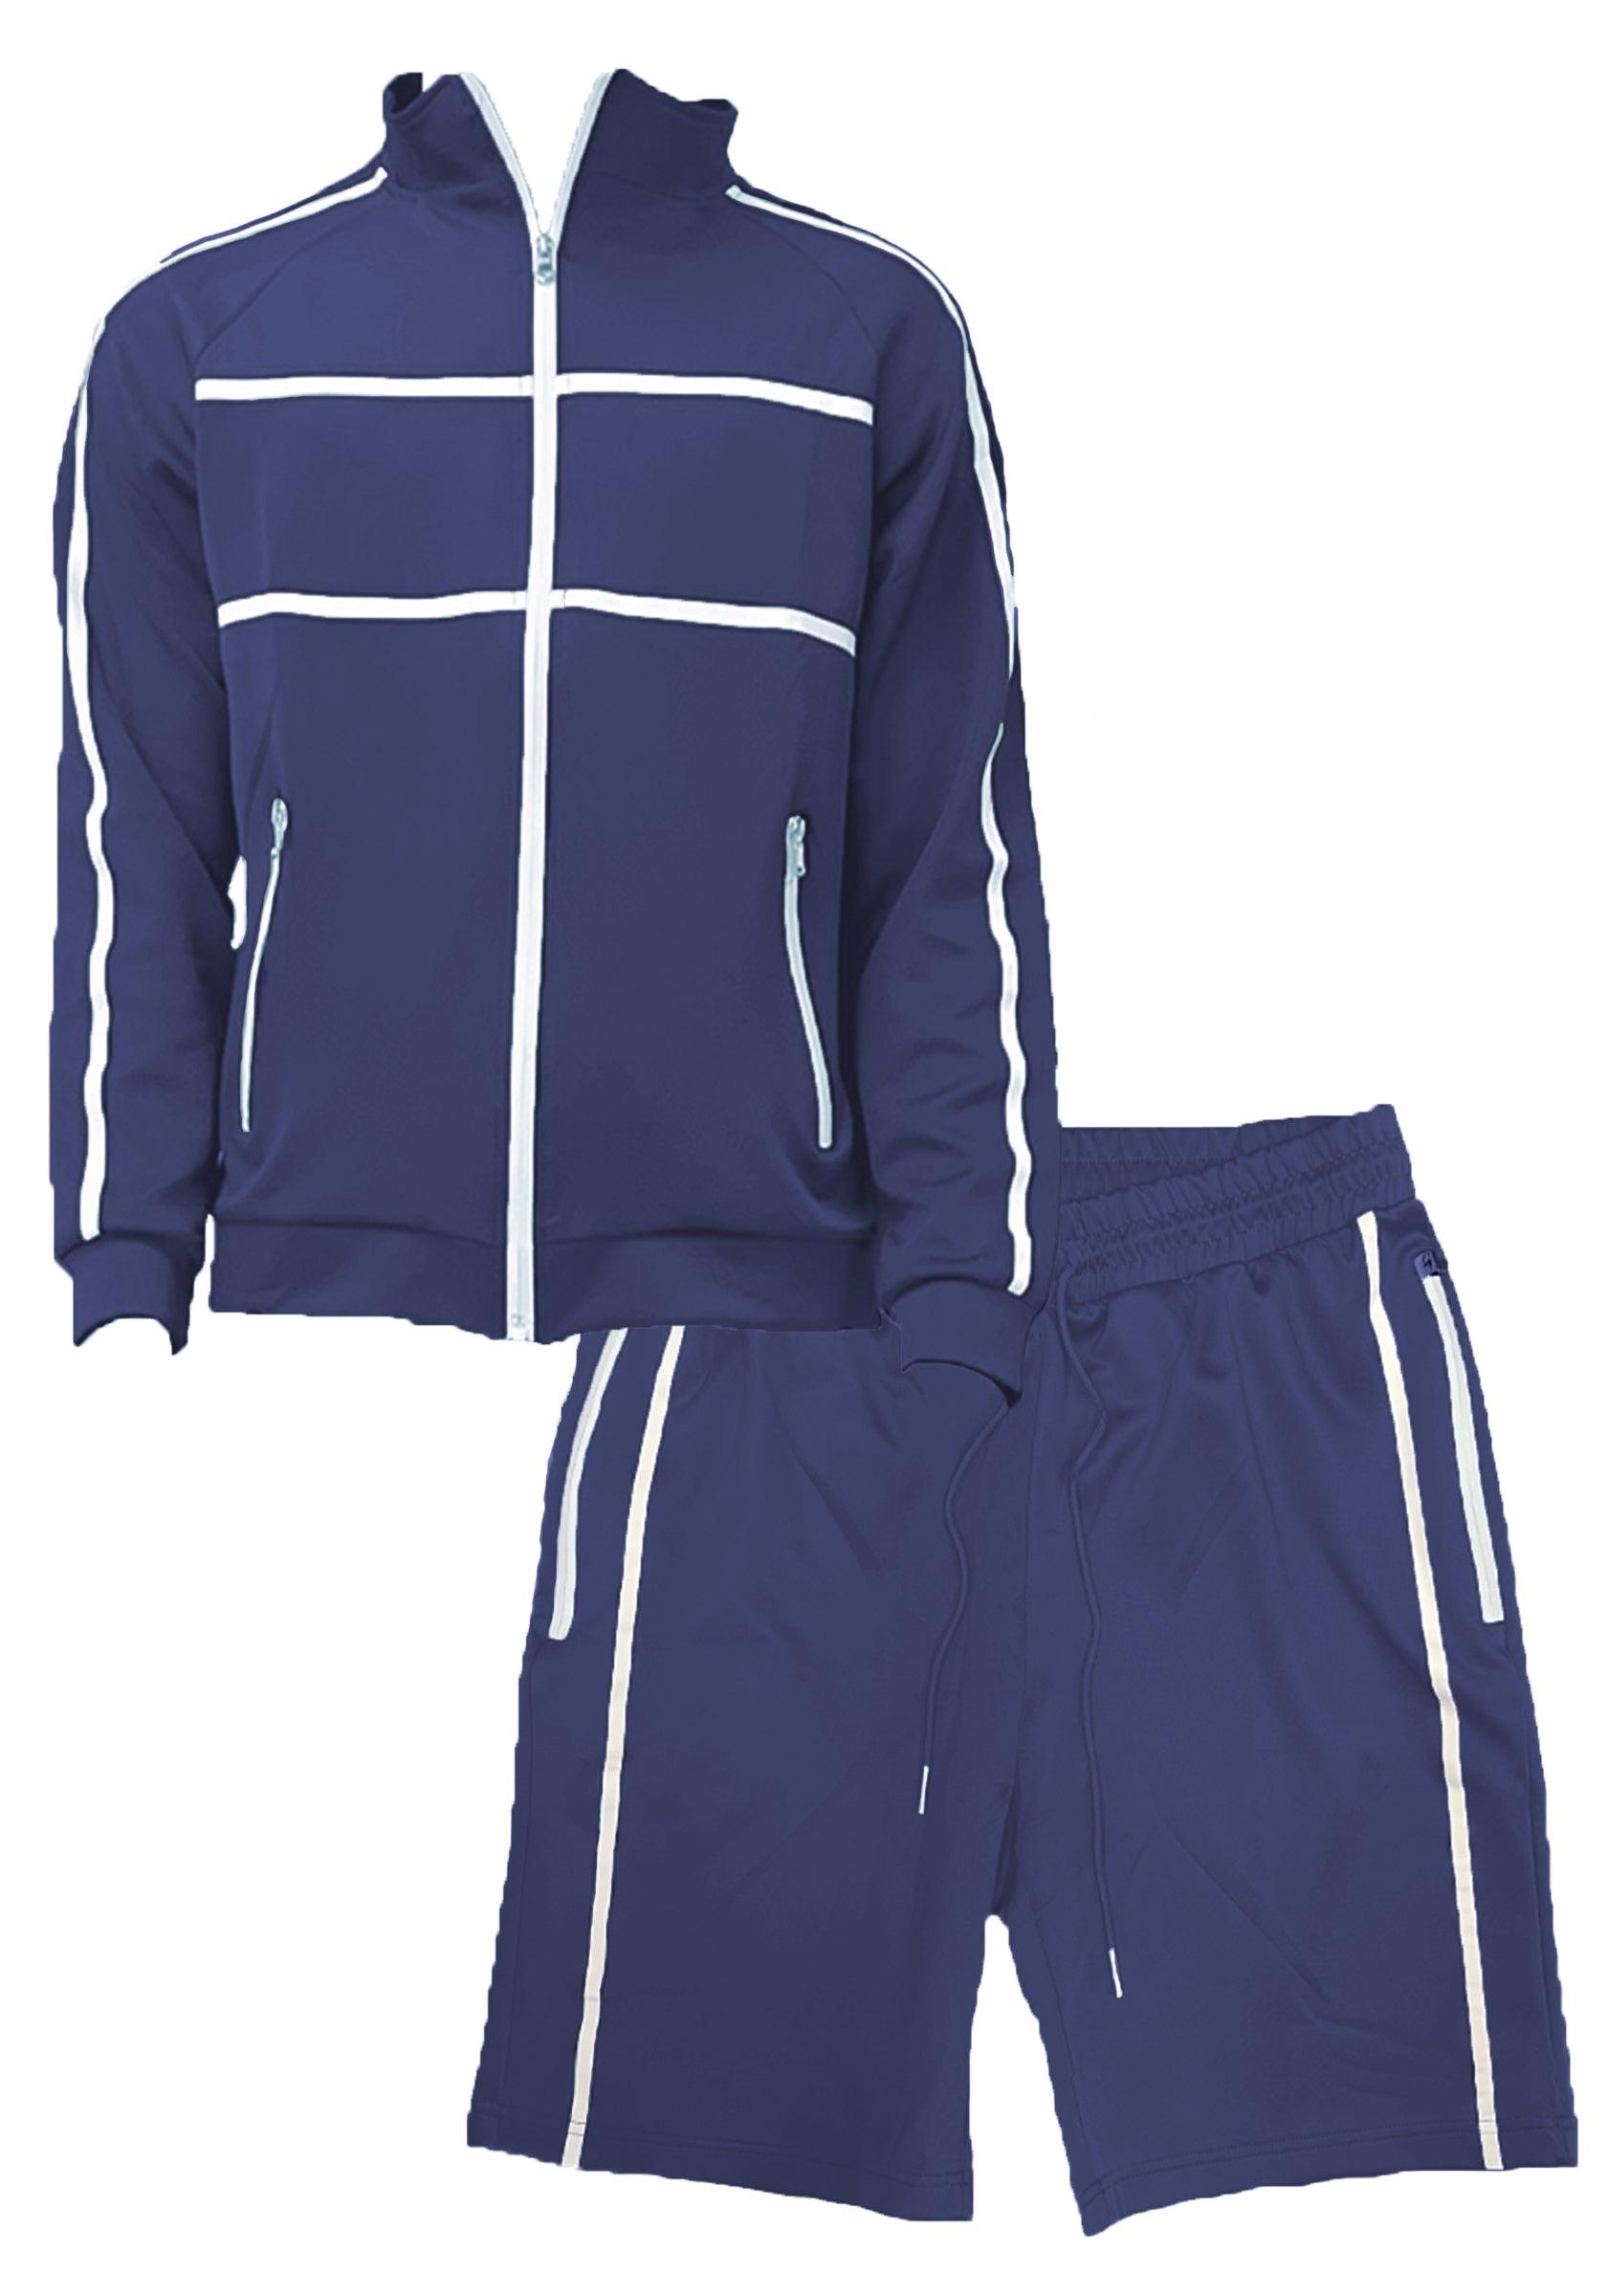 Men's 2PC Track Sets Navy Blue Jordan Track Jacket Short Set